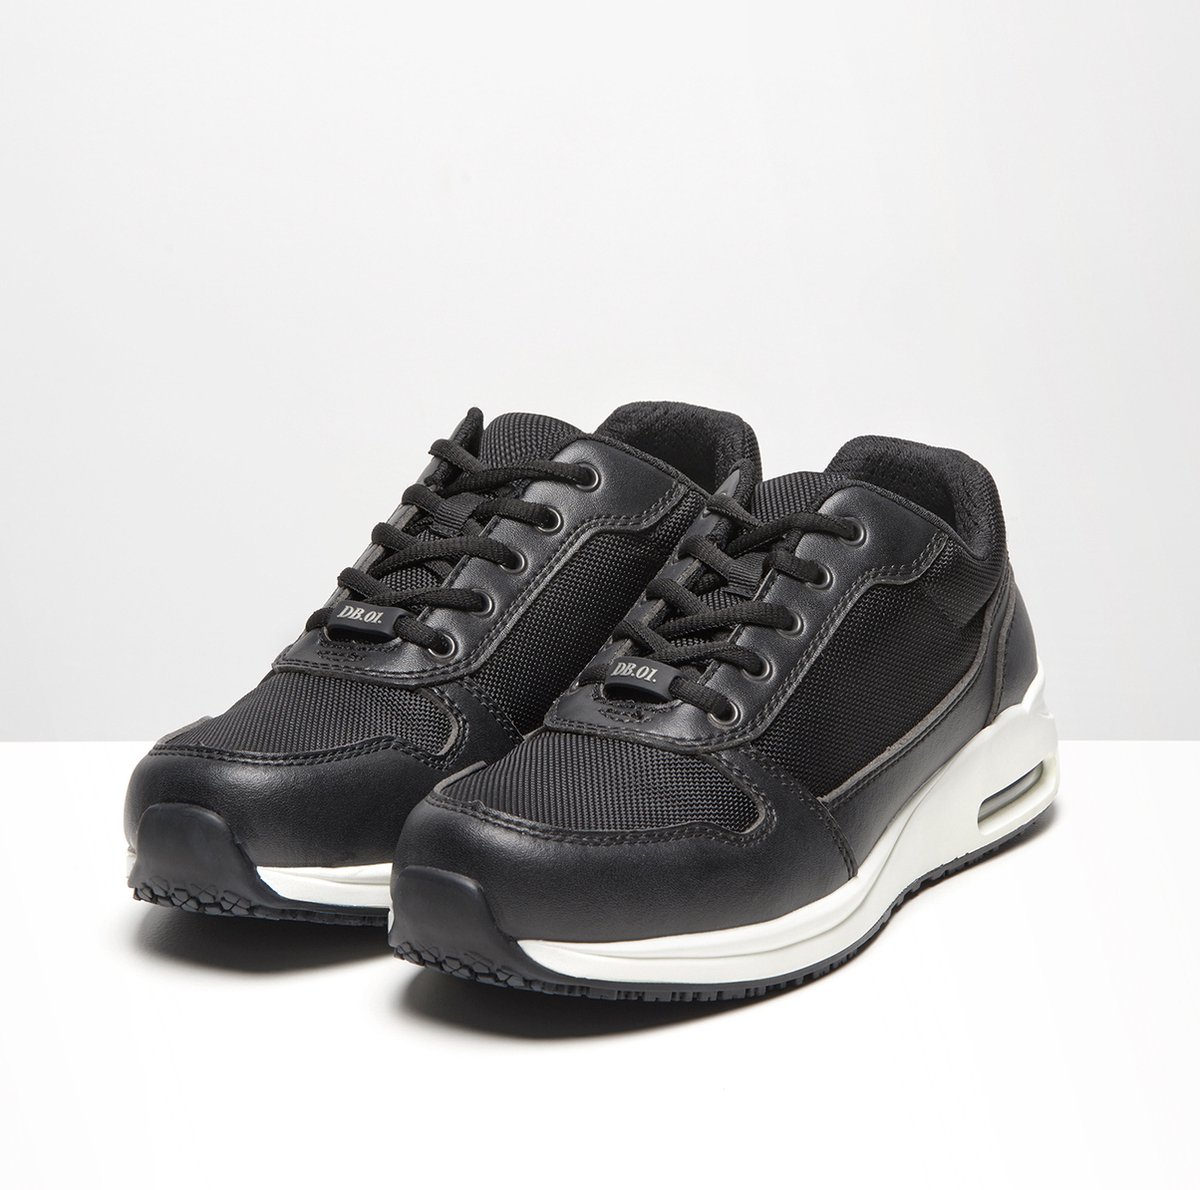 BSS Shoes Dyanne Beekman DB.01. werkschoenen Black/White - Wasbaar - Antislip - Vervangbare binnenzool